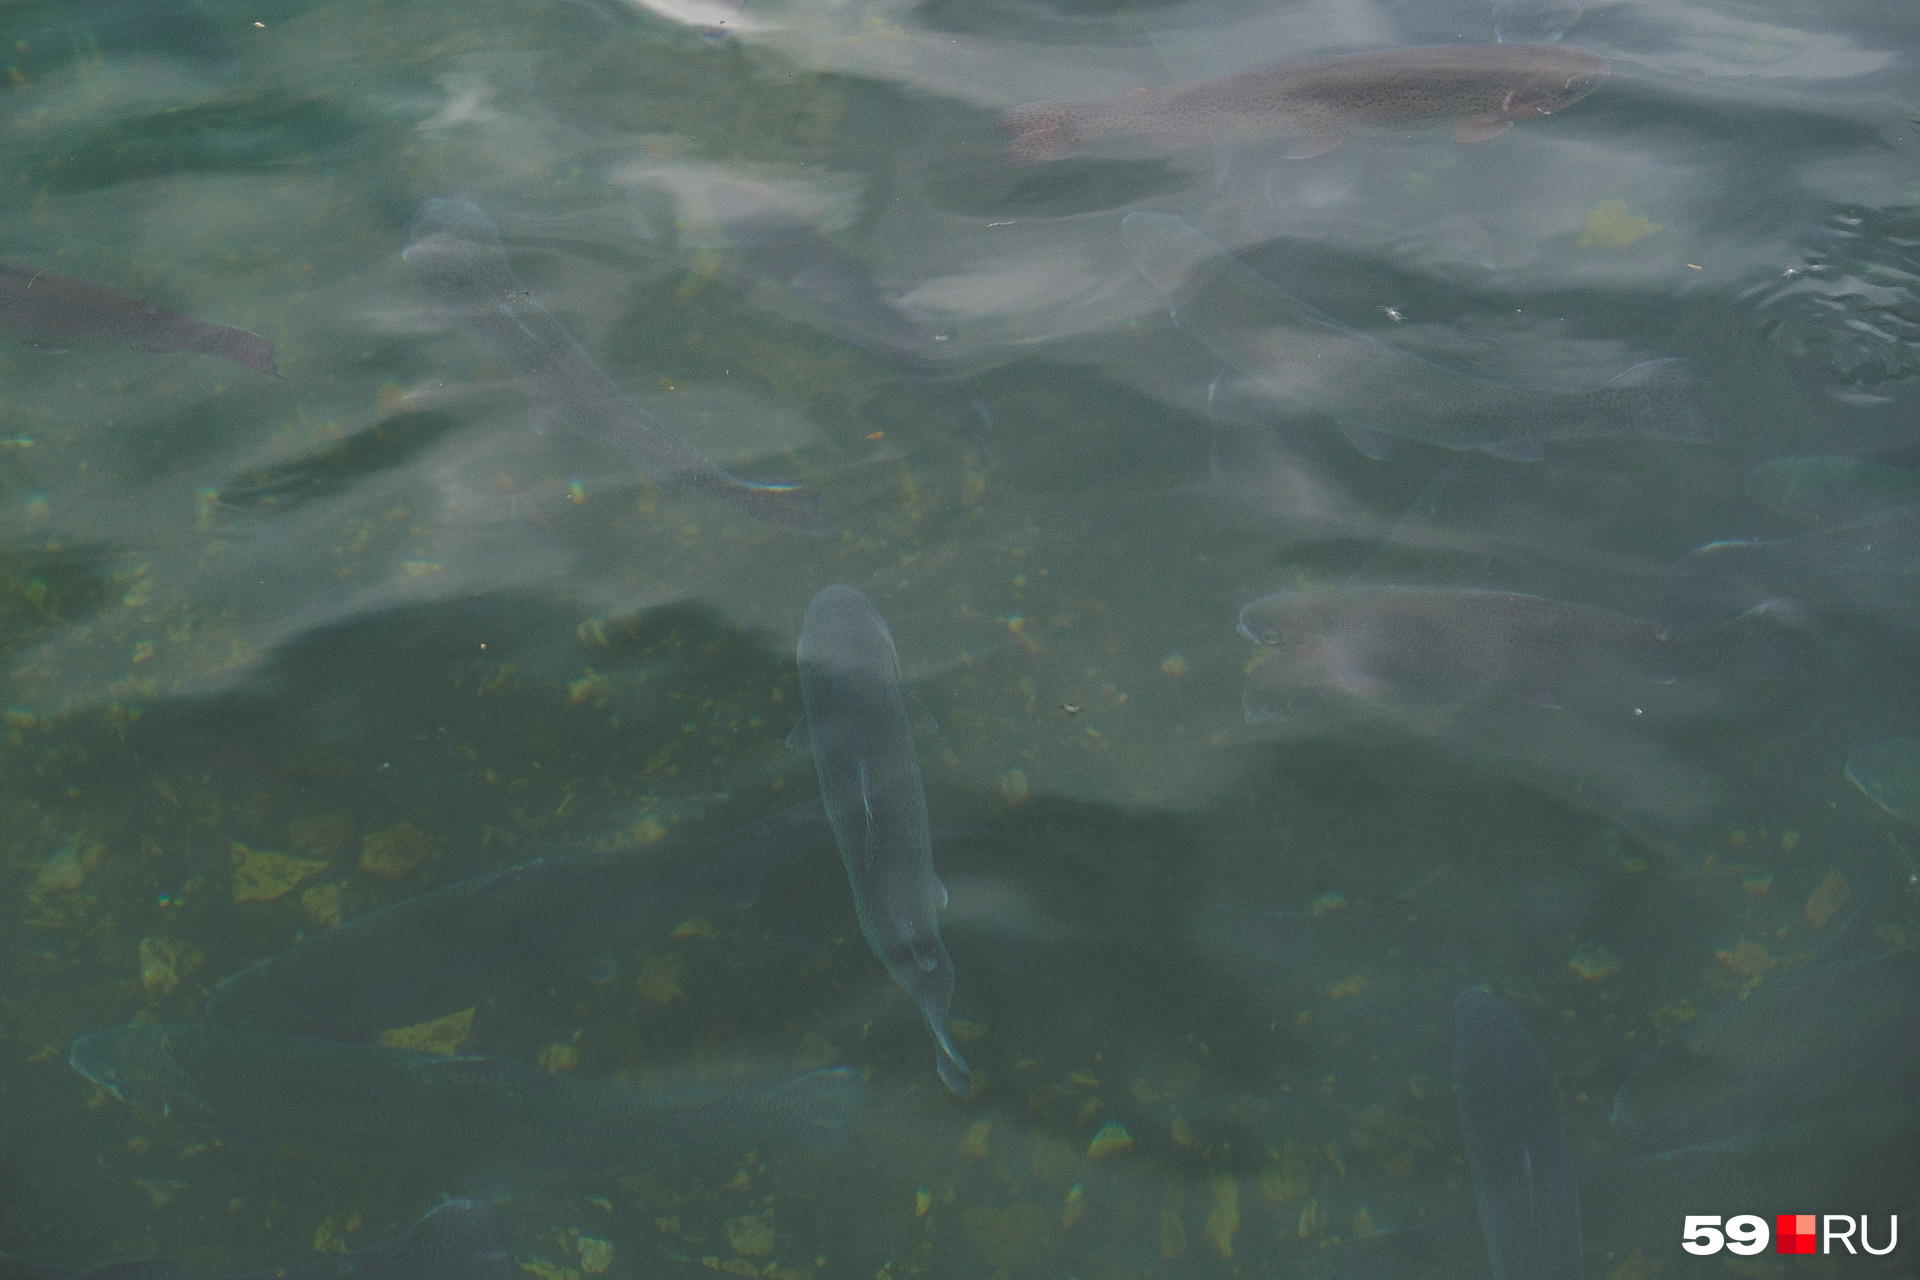 Рыбы видны под водой 